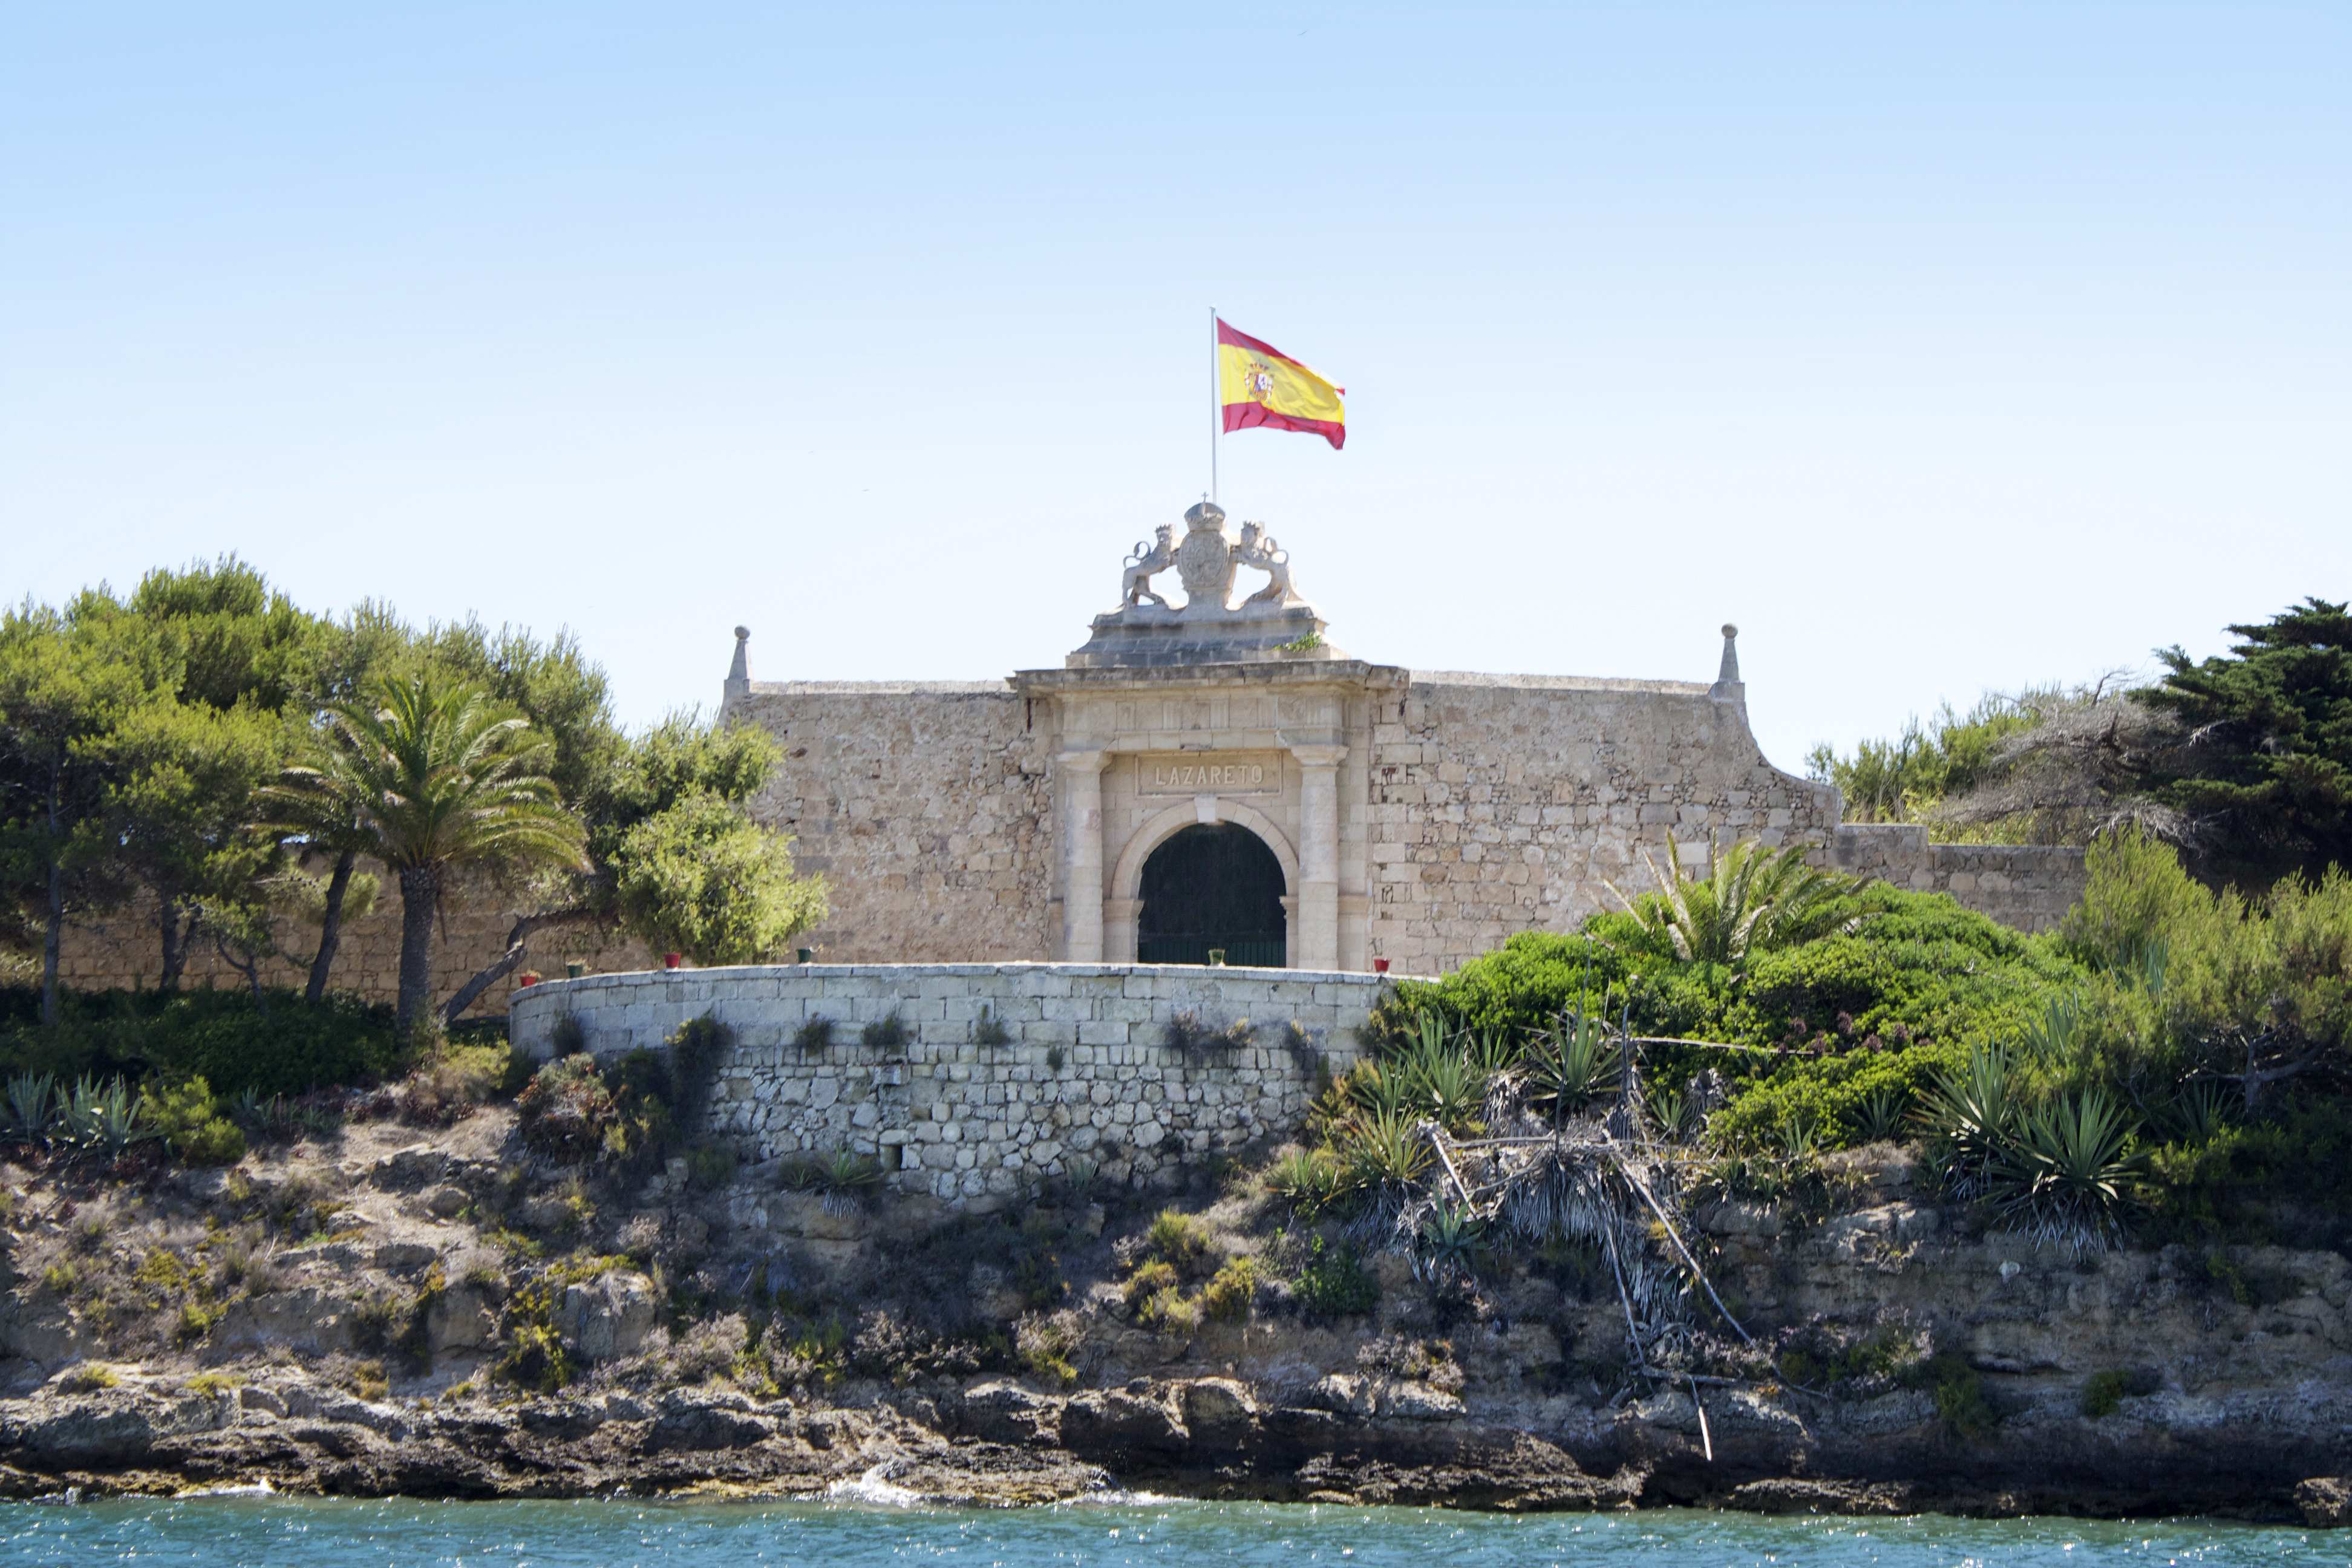 Les ‘quarantenes’ a Balears al llarg de la història